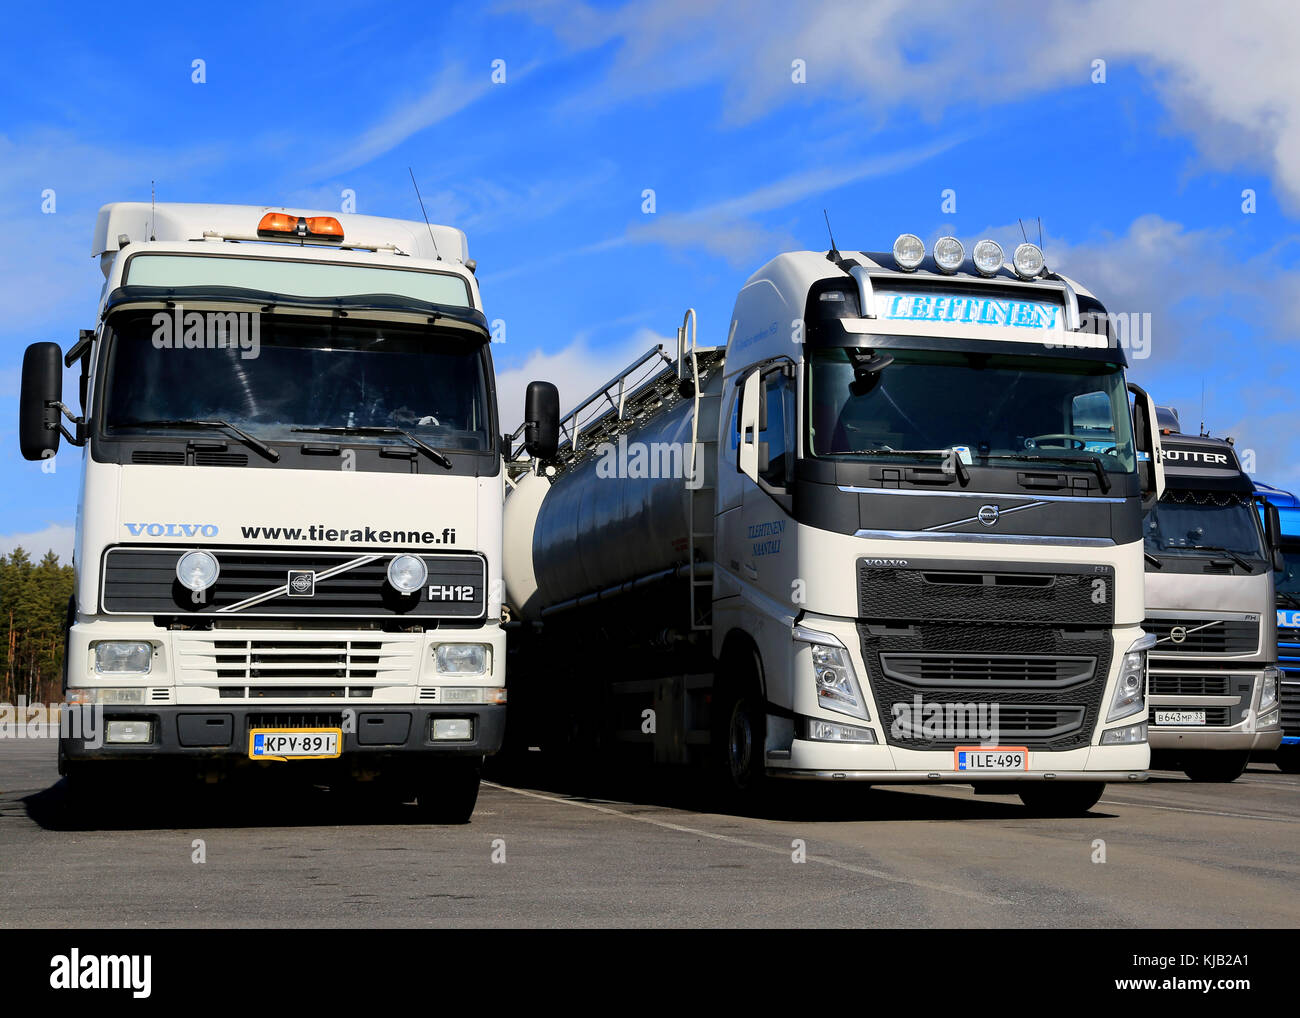 Raisio, Finlandia - 12 aprile 2014: Volvo fh camion di diverse generazioni in una fila. fh sta per inoltrare il controllo ad alta voce in cui numeri denominano Foto Stock